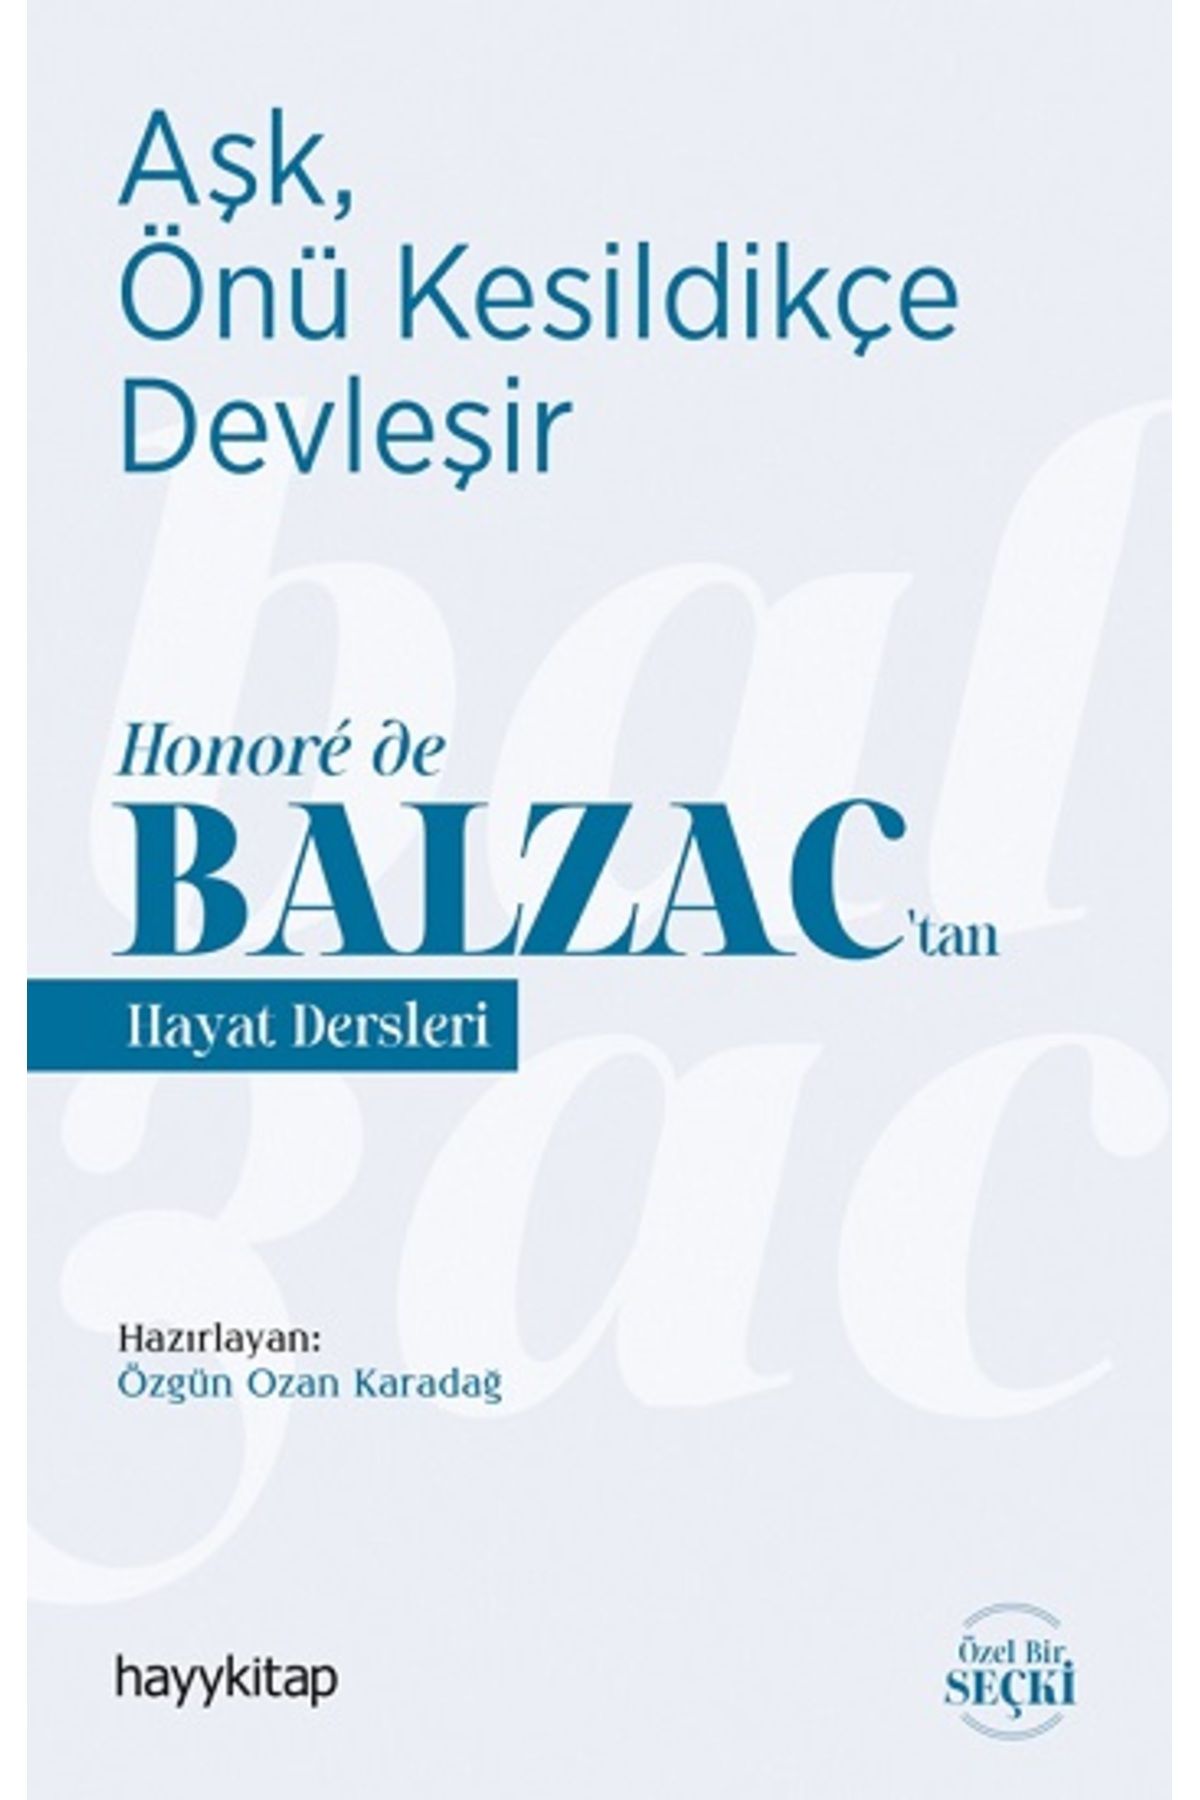 Hayykitap Aşk, Önü Kesildikçe Devleşir - Honore de Balzac’tan  Hayat Dersleri kitabı - Hayy Kolektif - Hayykit